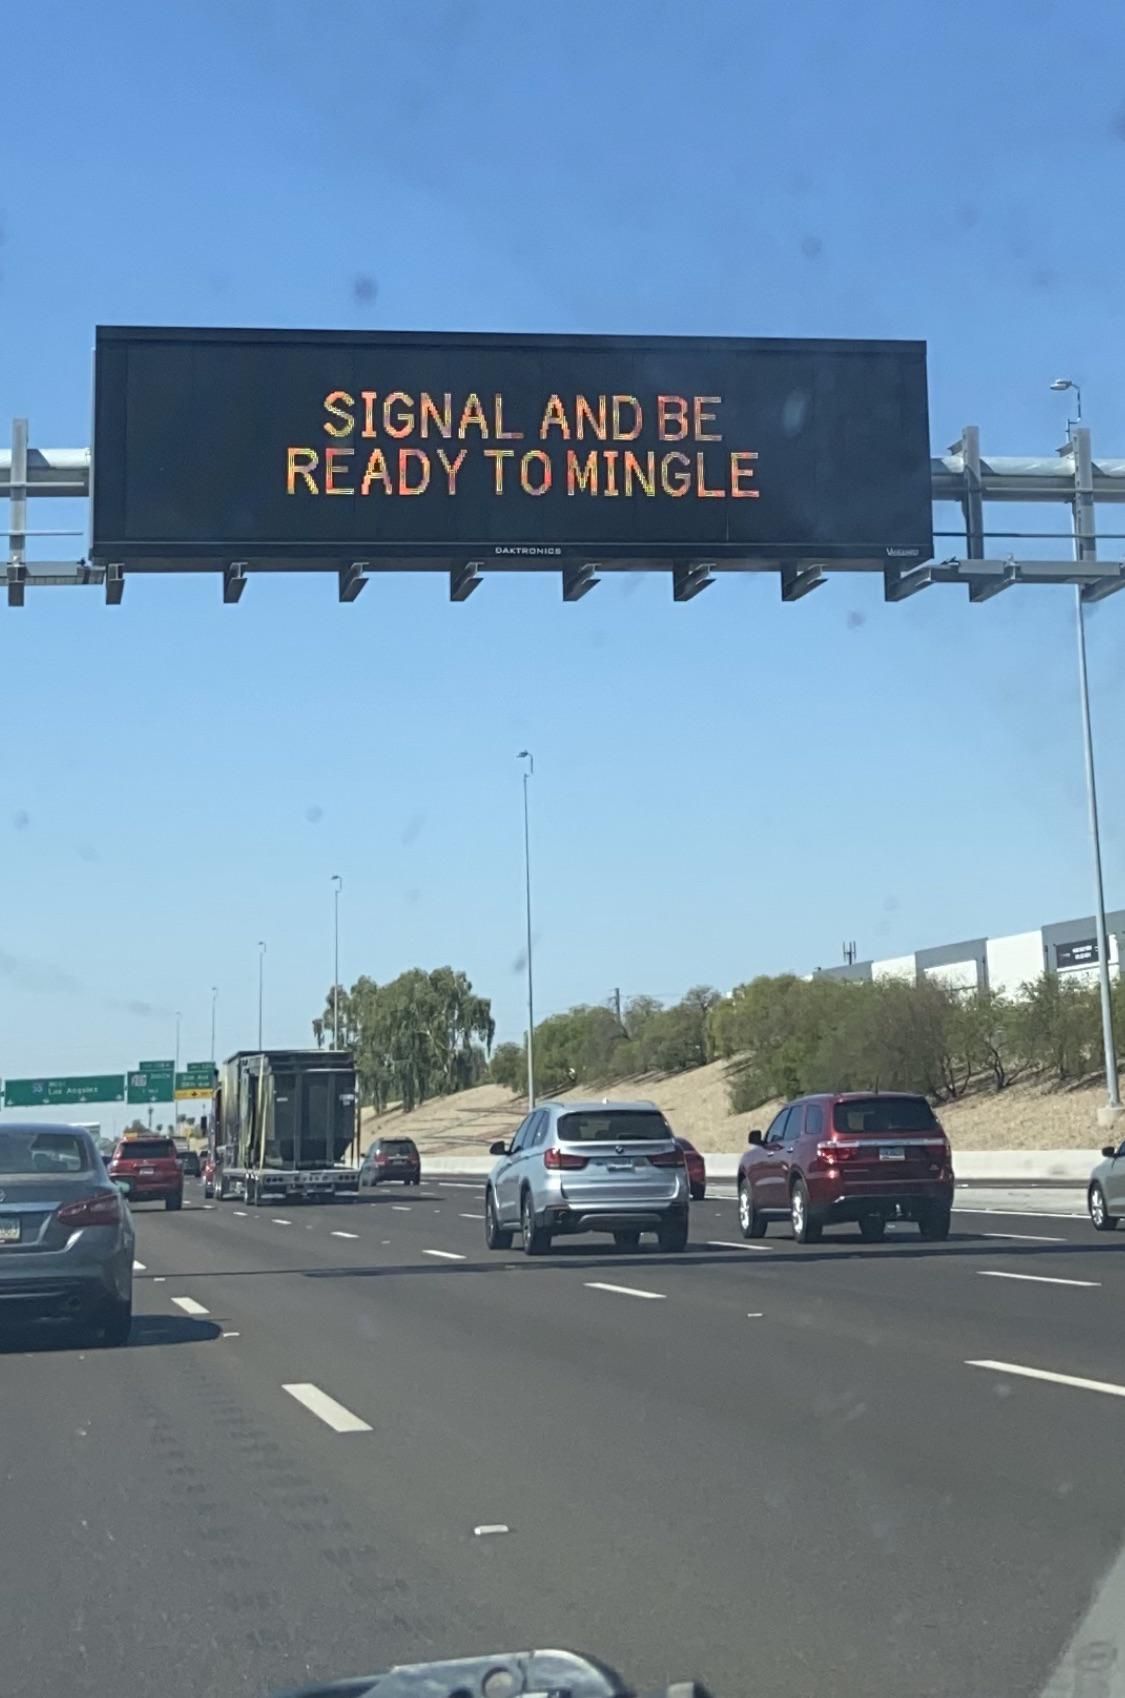 Arizona, you tried.